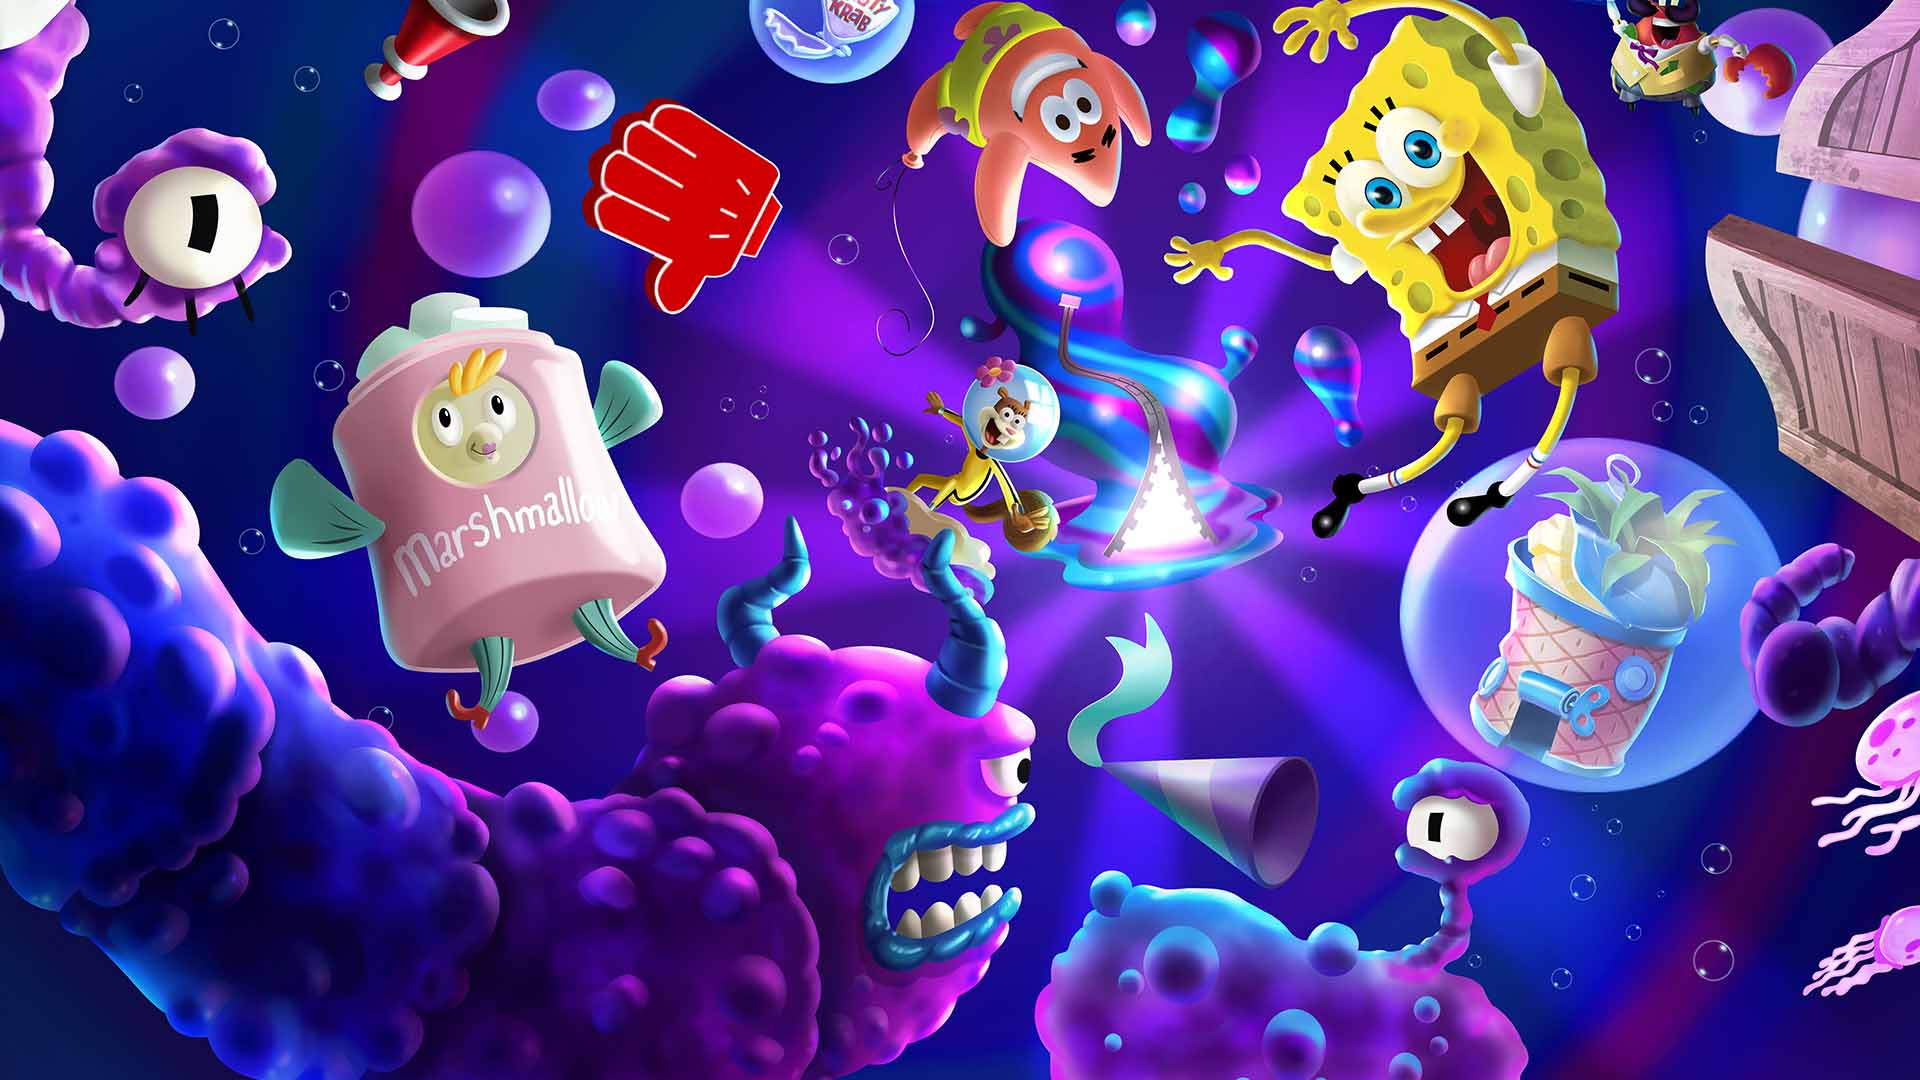 PowerWash Simulator Gets a SpongeBob Squarepants Special Pack